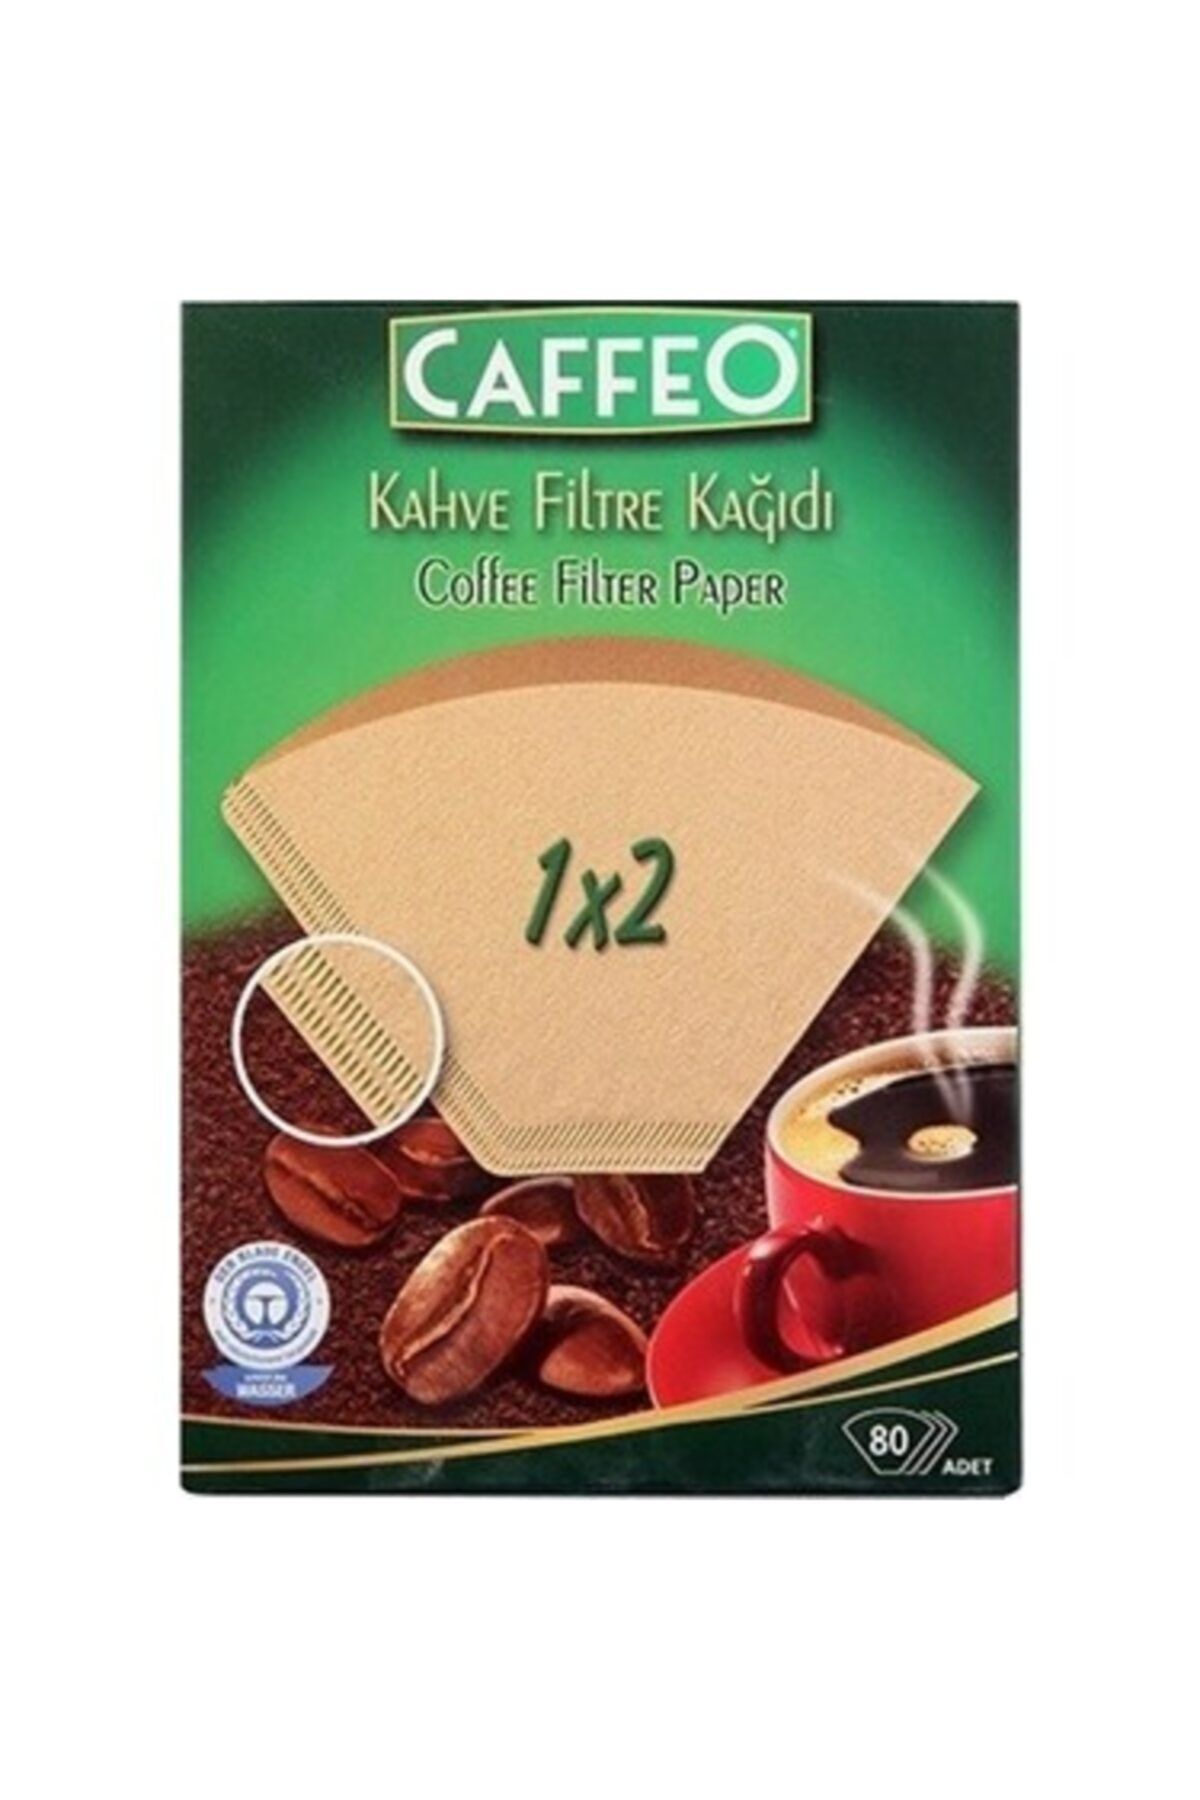 Caffeo Kahve Filtre Kağıdı 1x2 80'li